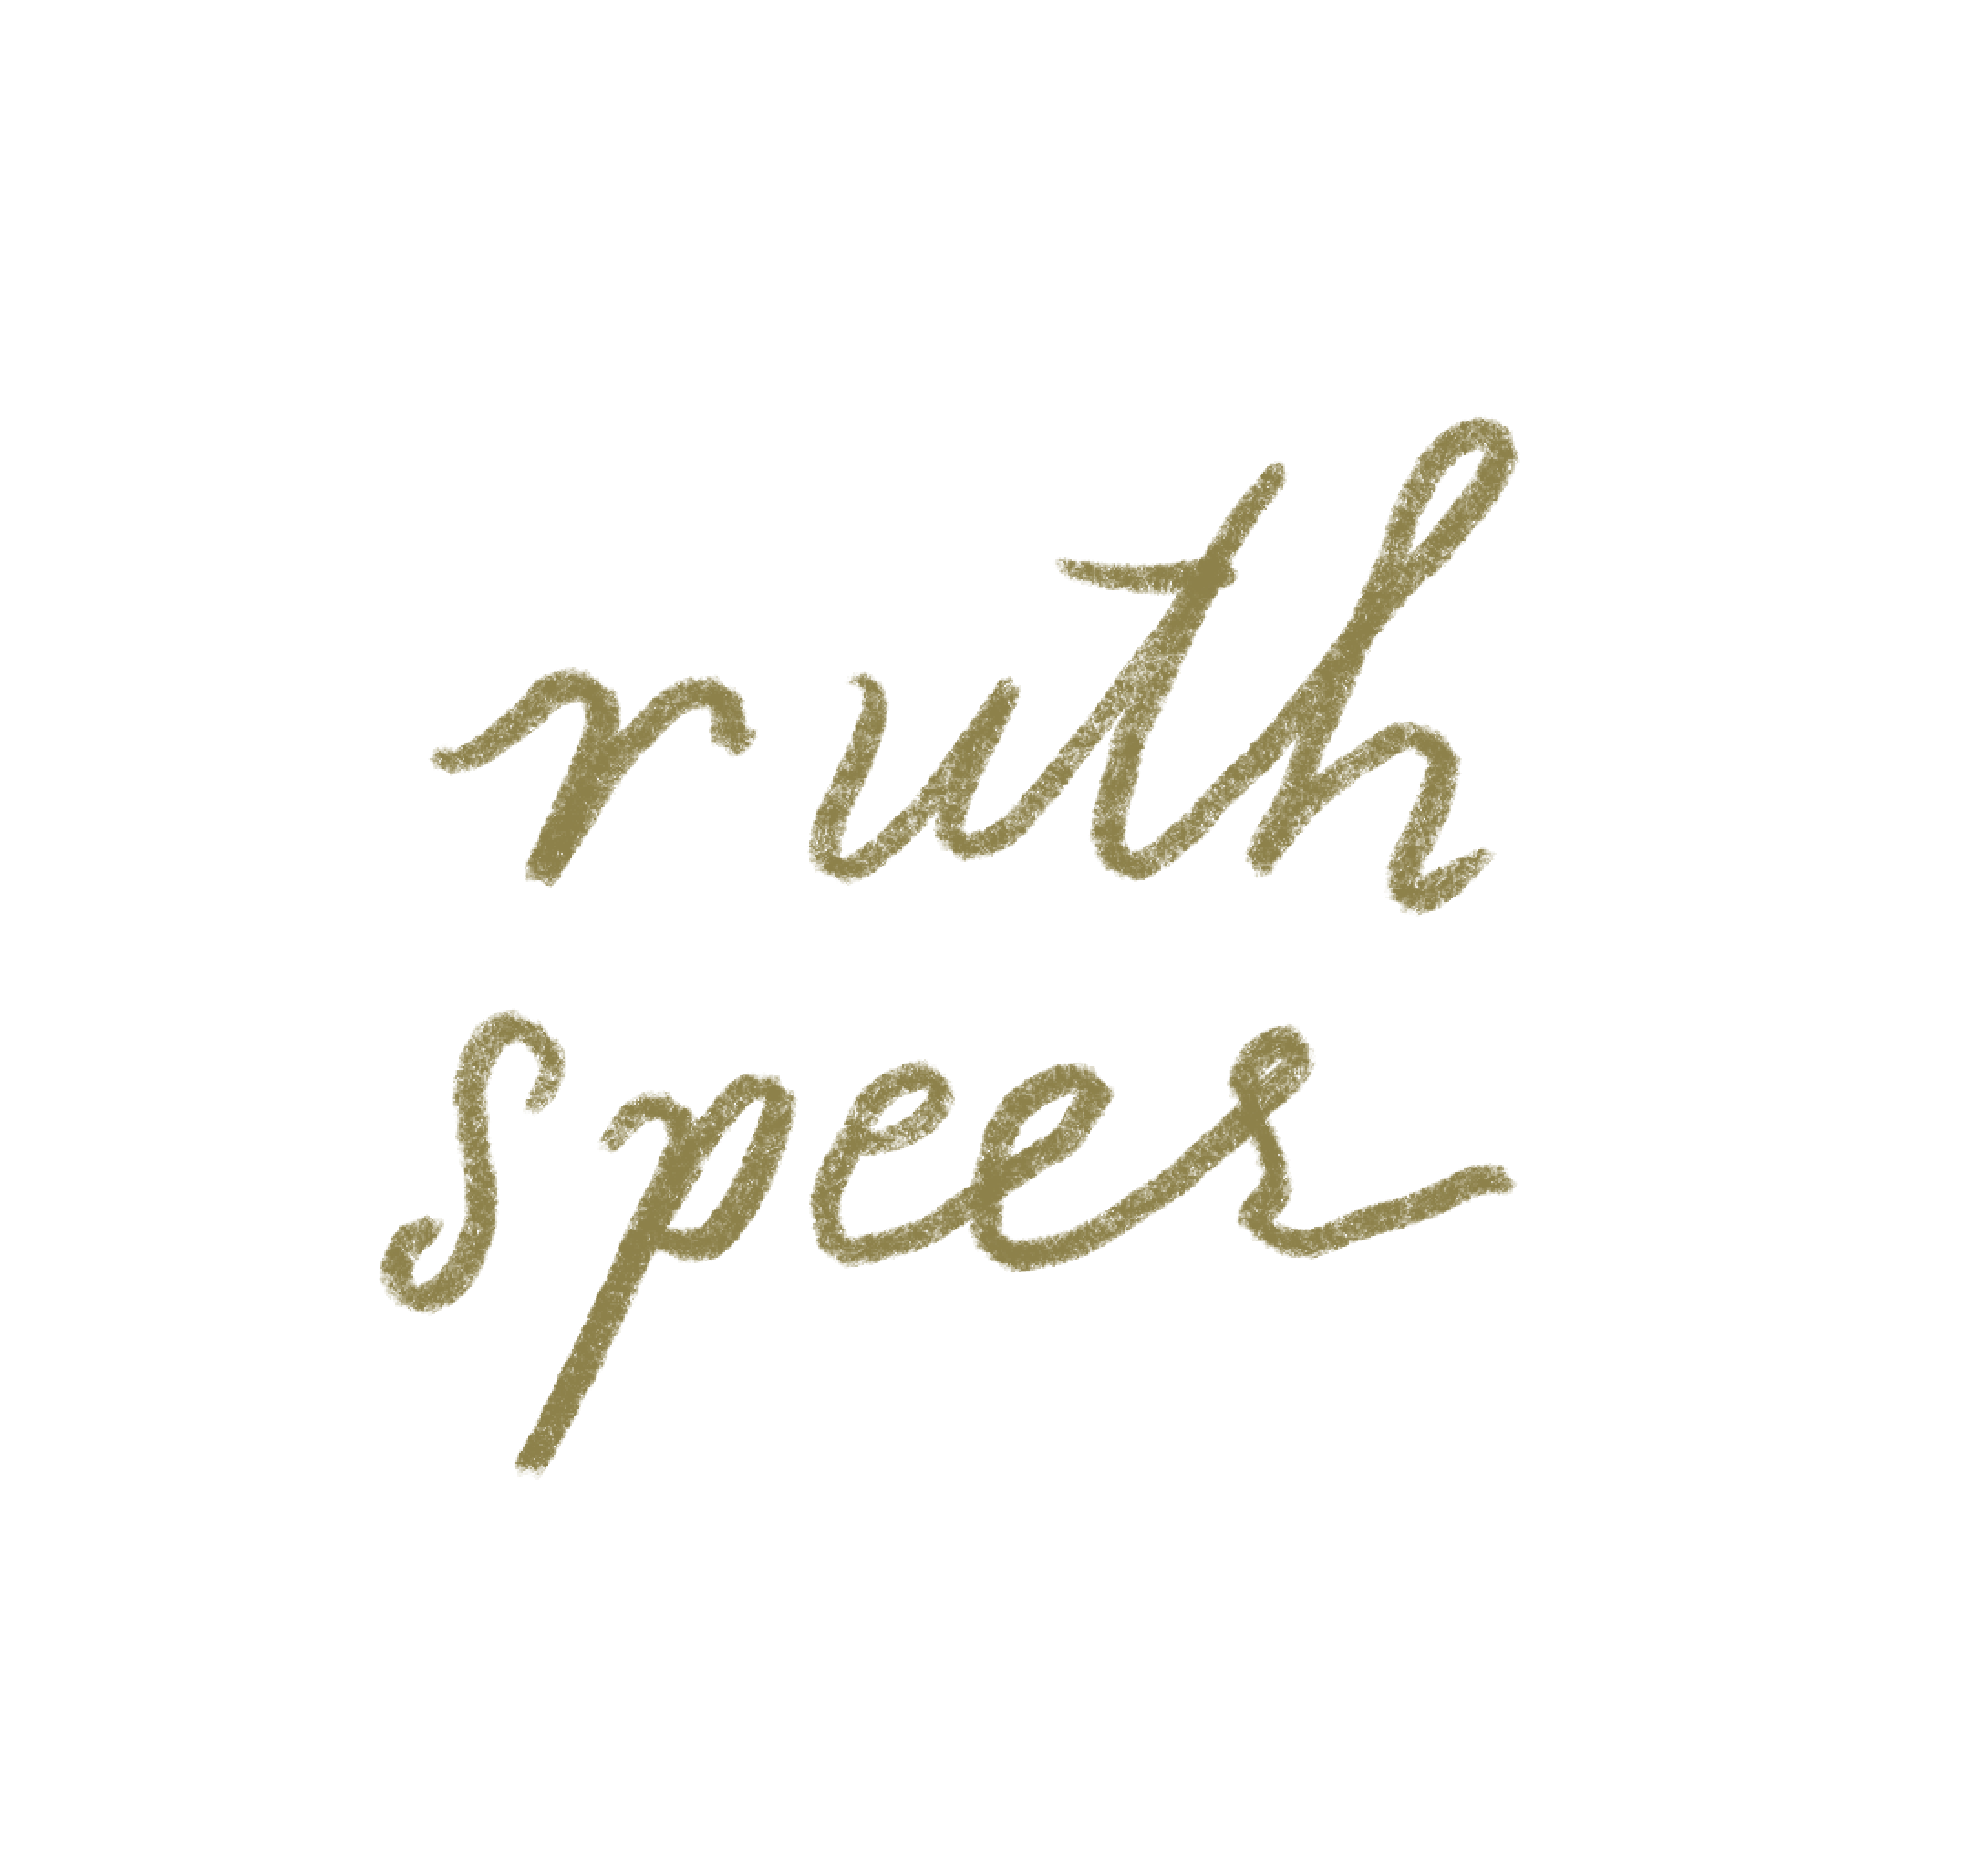 Ruth Speer